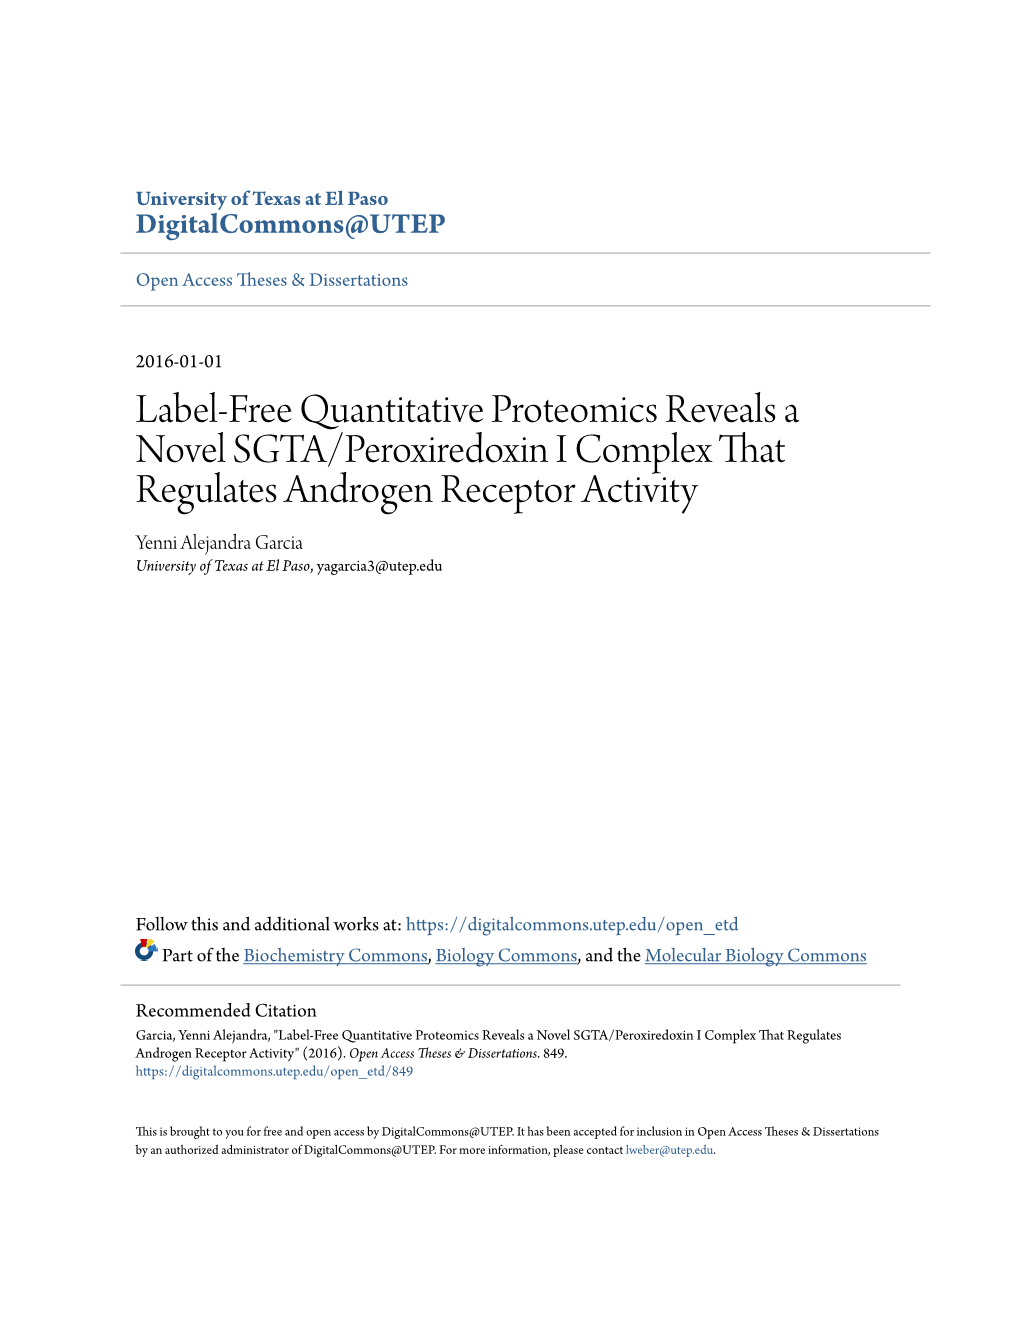 Label-Free Quantitative Proteomics Reveals a Novel SGTA